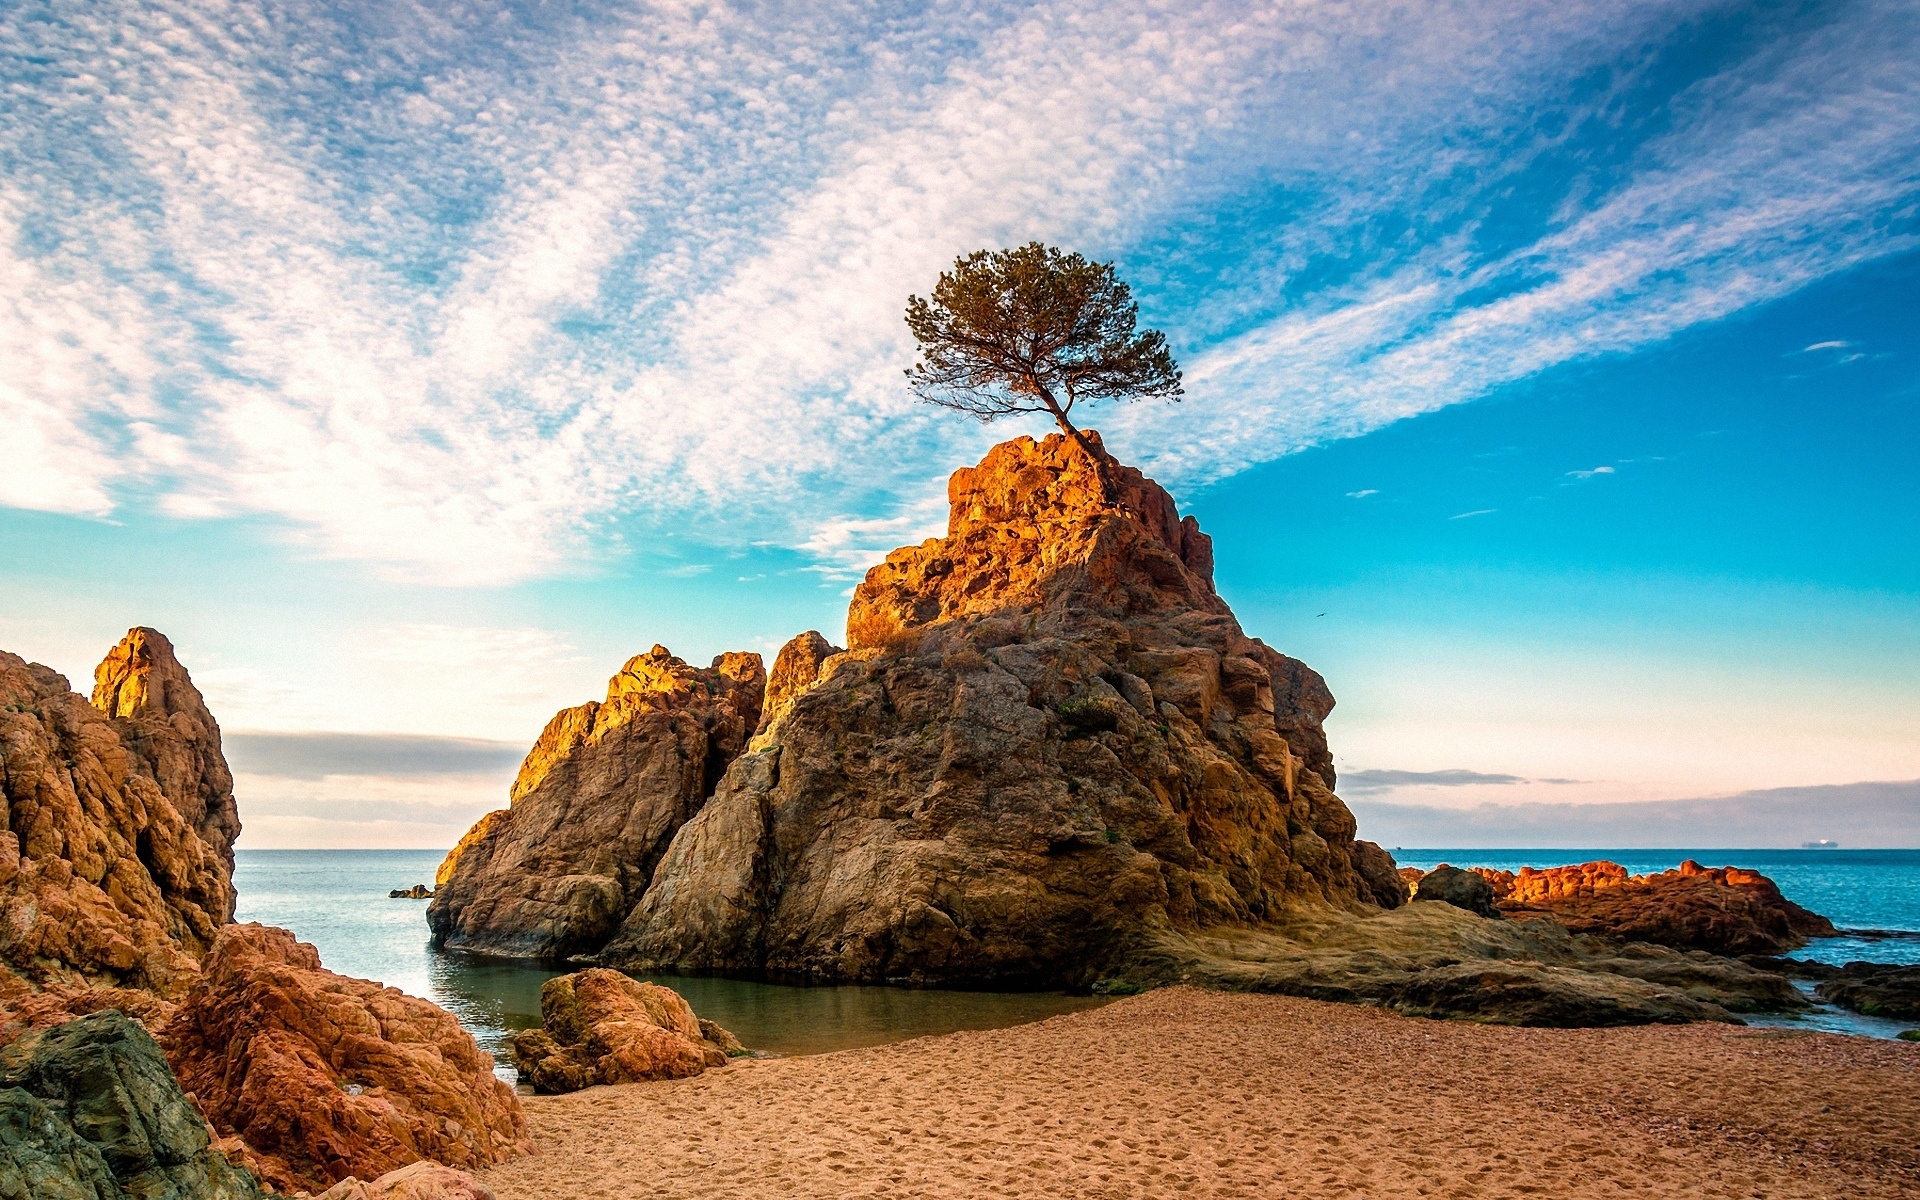 عکس طبیعت صخره سنگی در ساحل برای چاپ با کیفیت بالا